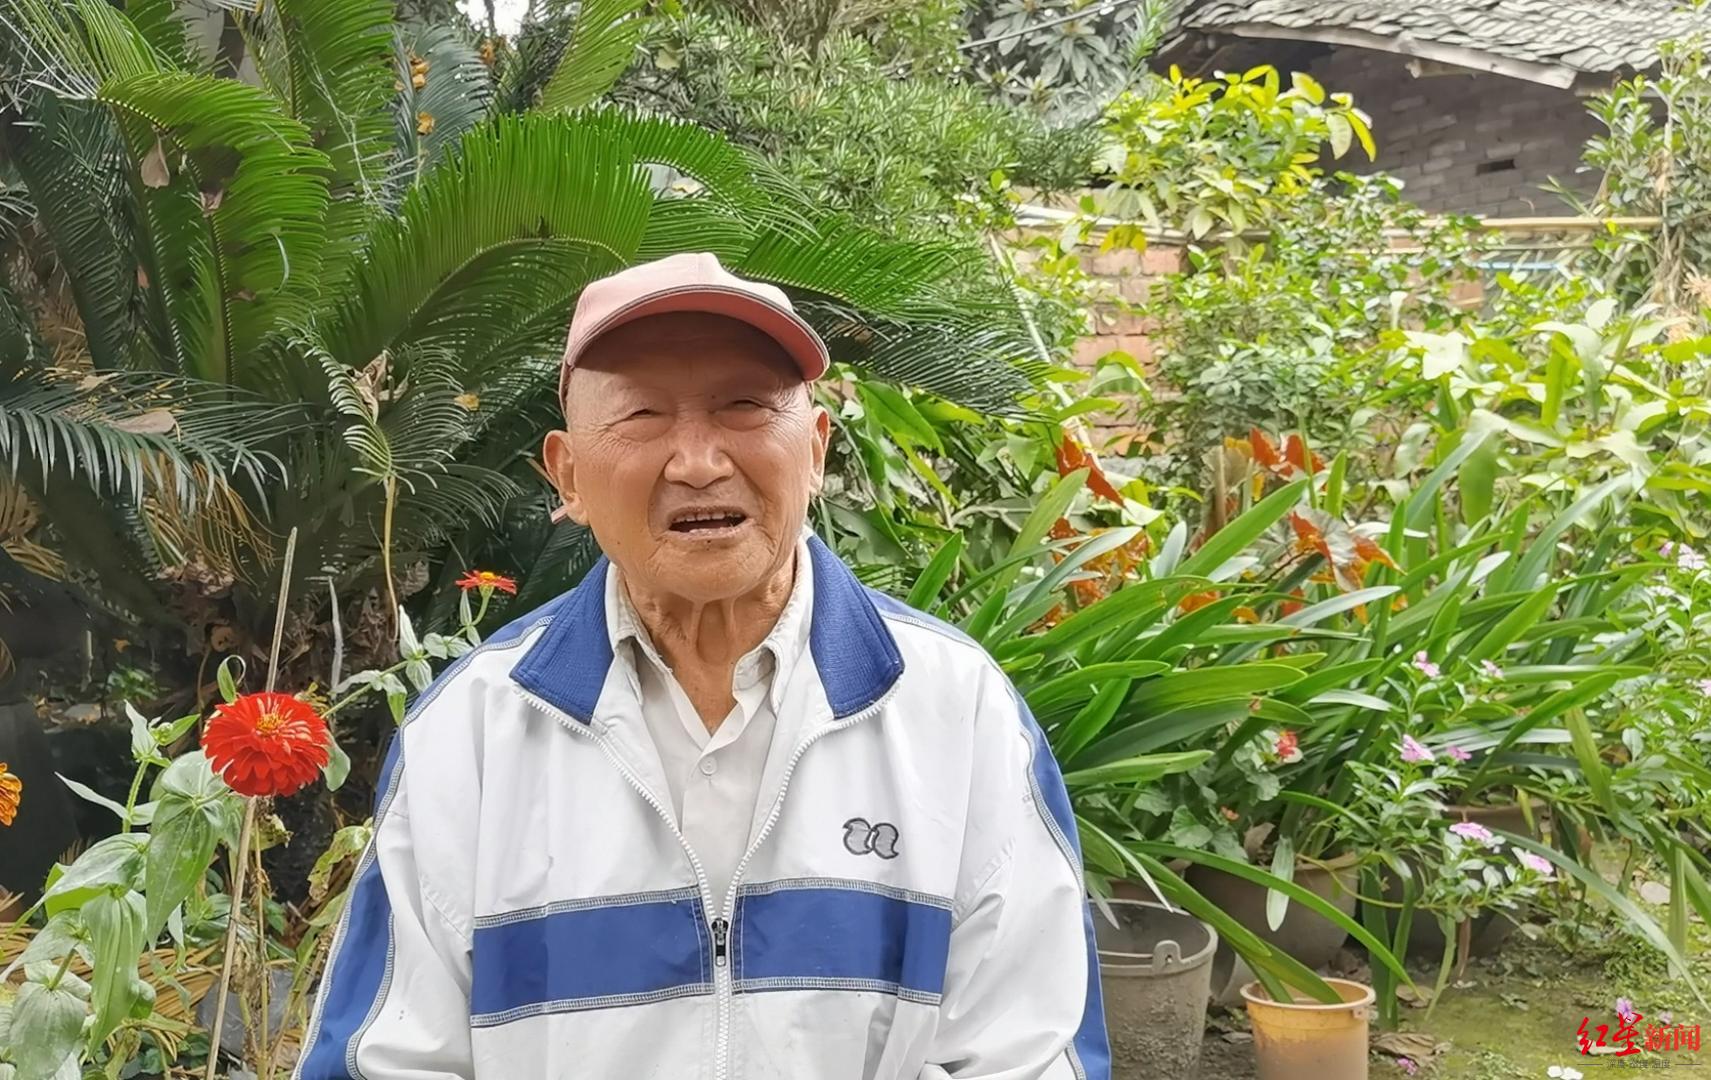 86岁学霸爷爷的传奇:60岁后三进大学 如今每天读报练字,学英语,做50个